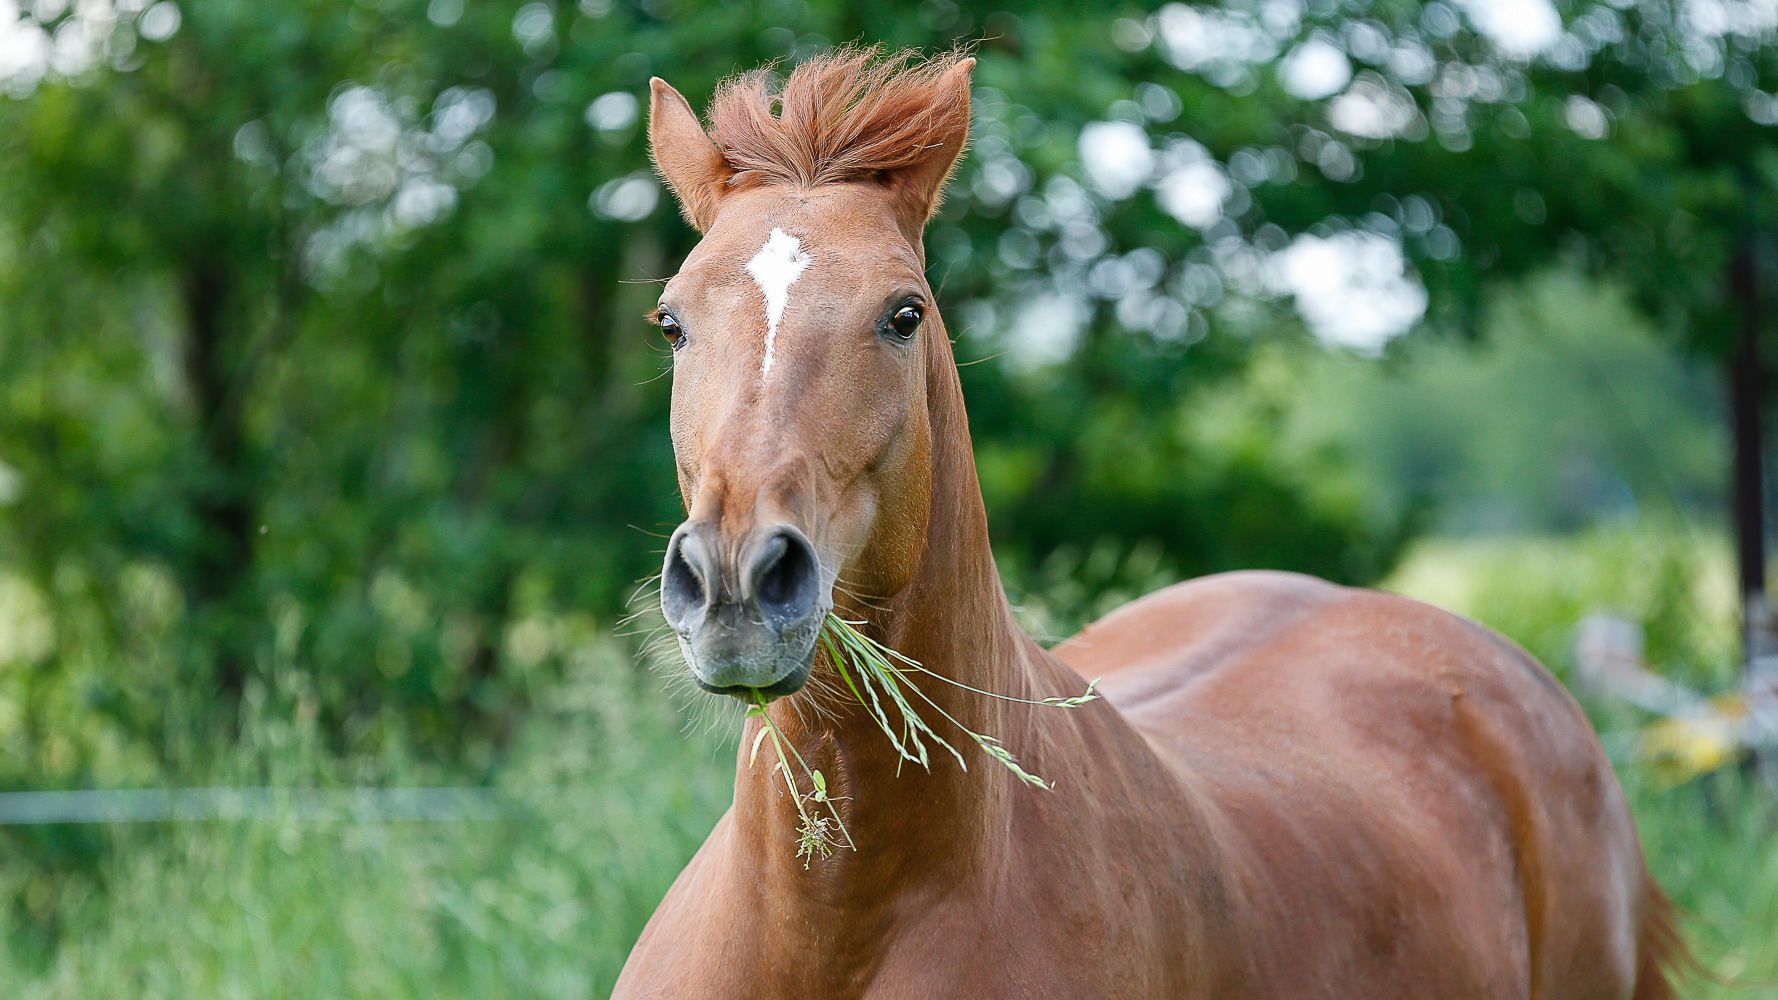 Grasfressen und Koppelgang sind fürs Pferd die natürlichste Futter- und Beschäftigungsform. Foto: Springfeldt, www.springfeldtprofifoto.com